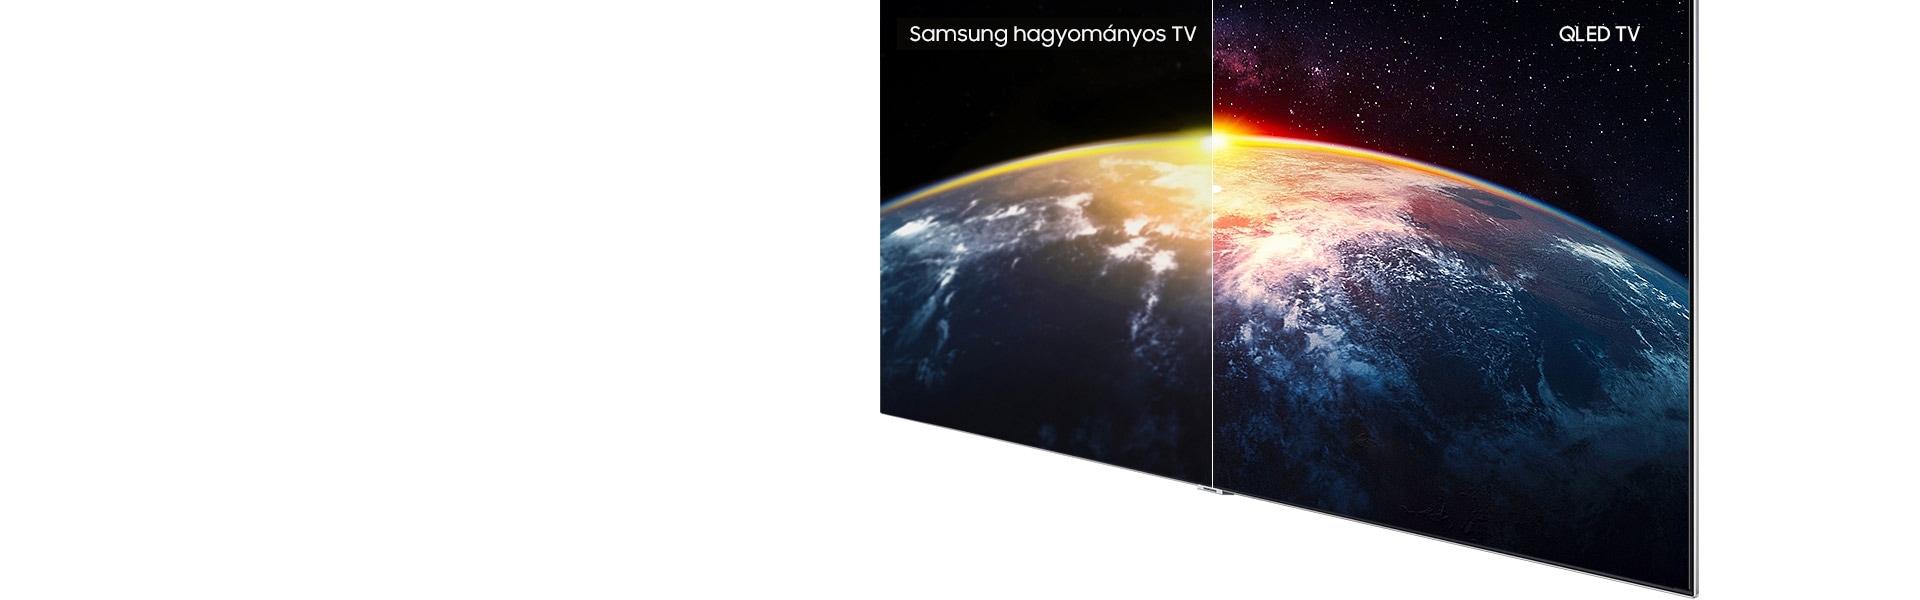 A napfény által megvilágított Föld képei a Q Kontraszt bemutatásához. A Samsung QLED TV mutatta kép a jobb oldalon tisztább, mint másik tévéé a bal oldalon. A Samsung QLED TV mutatta képen láthatók a Föld felszínének részletei és az univerzum csillagai.